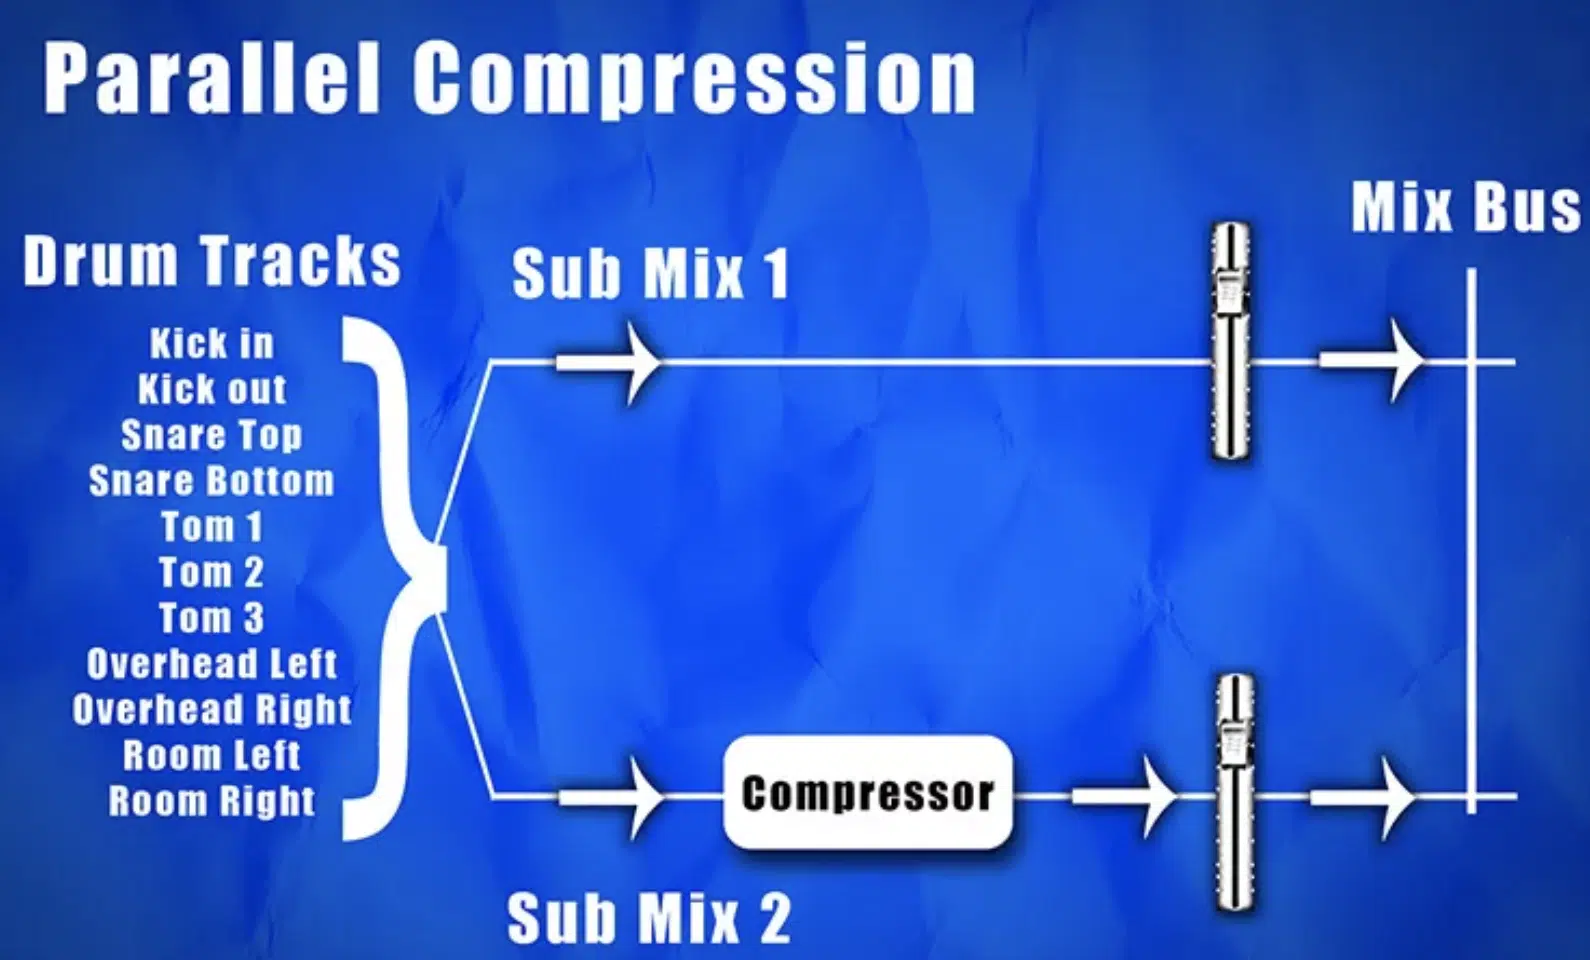 Parallel Compression Description - Unison